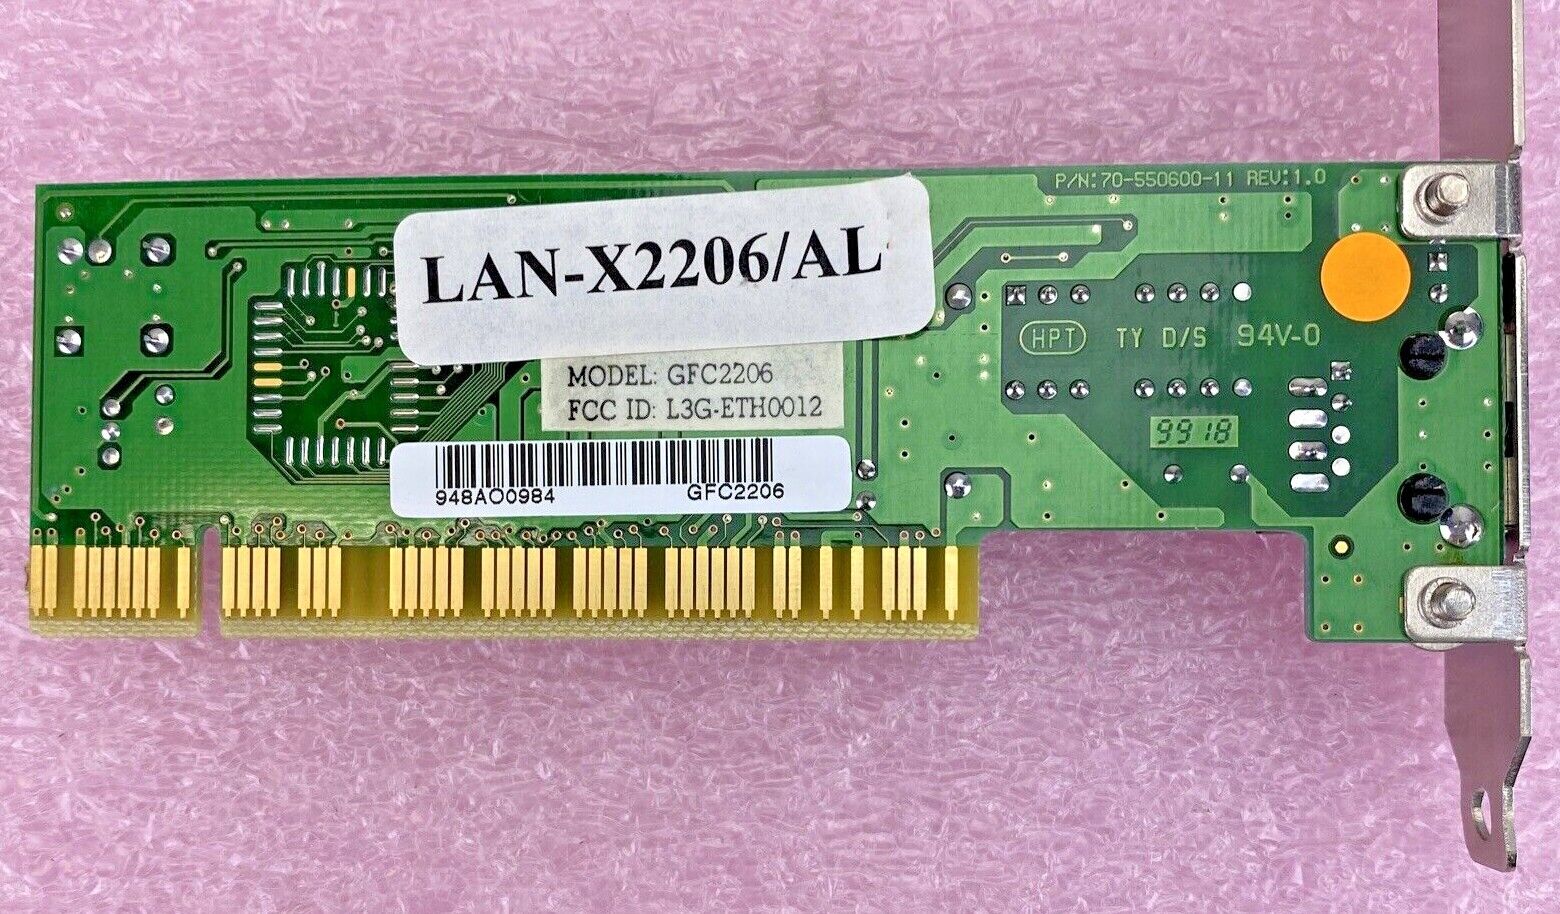 NetSurf GFC2206 70-550600-11 Rev1.1 Realtek RTL8139B LAN Network PCI A